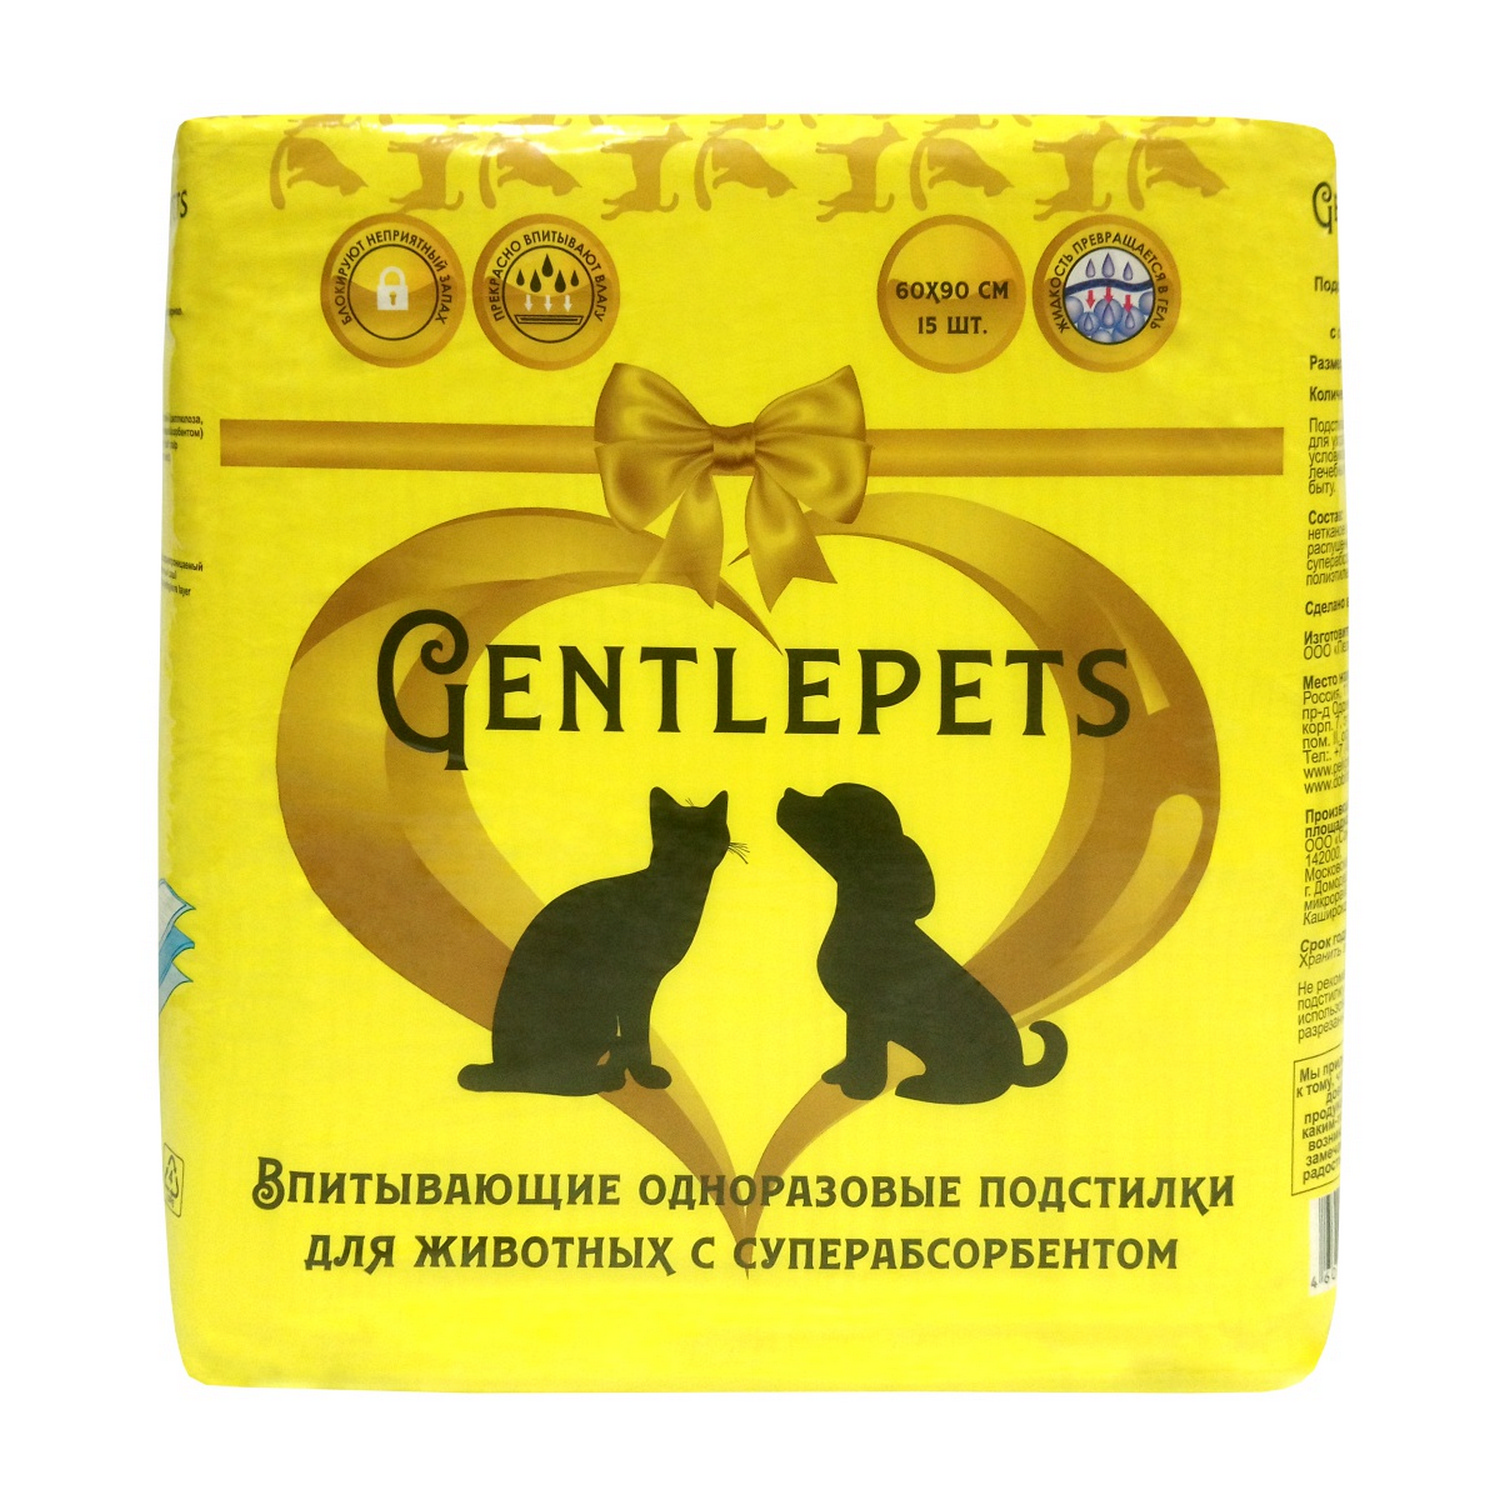 Пеленки для животных Gentlepets впитывающие одноразовые с суперабсорбентом 60x90 см 15 шт - фото 1